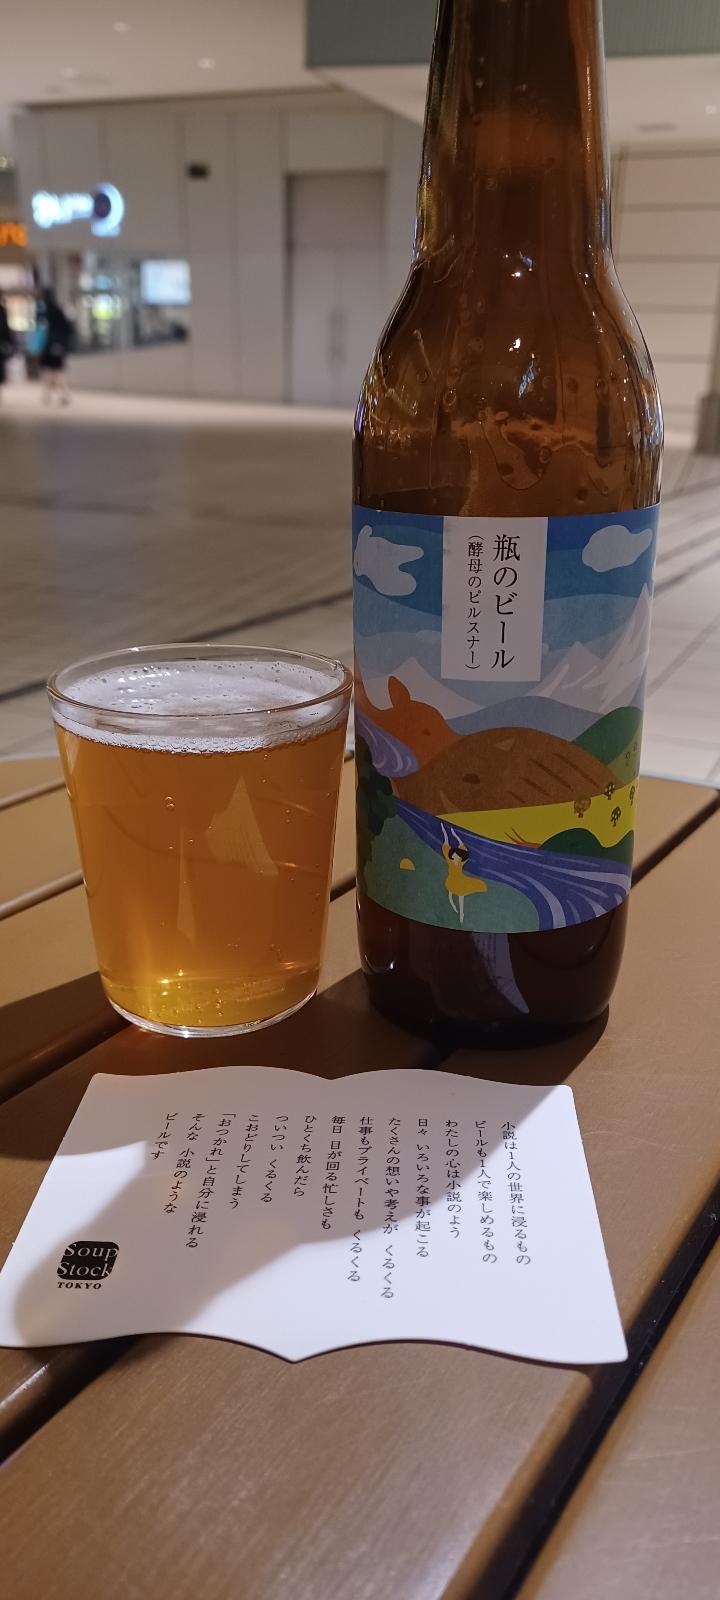 Bin no Beer - Soup Stock Tokyo